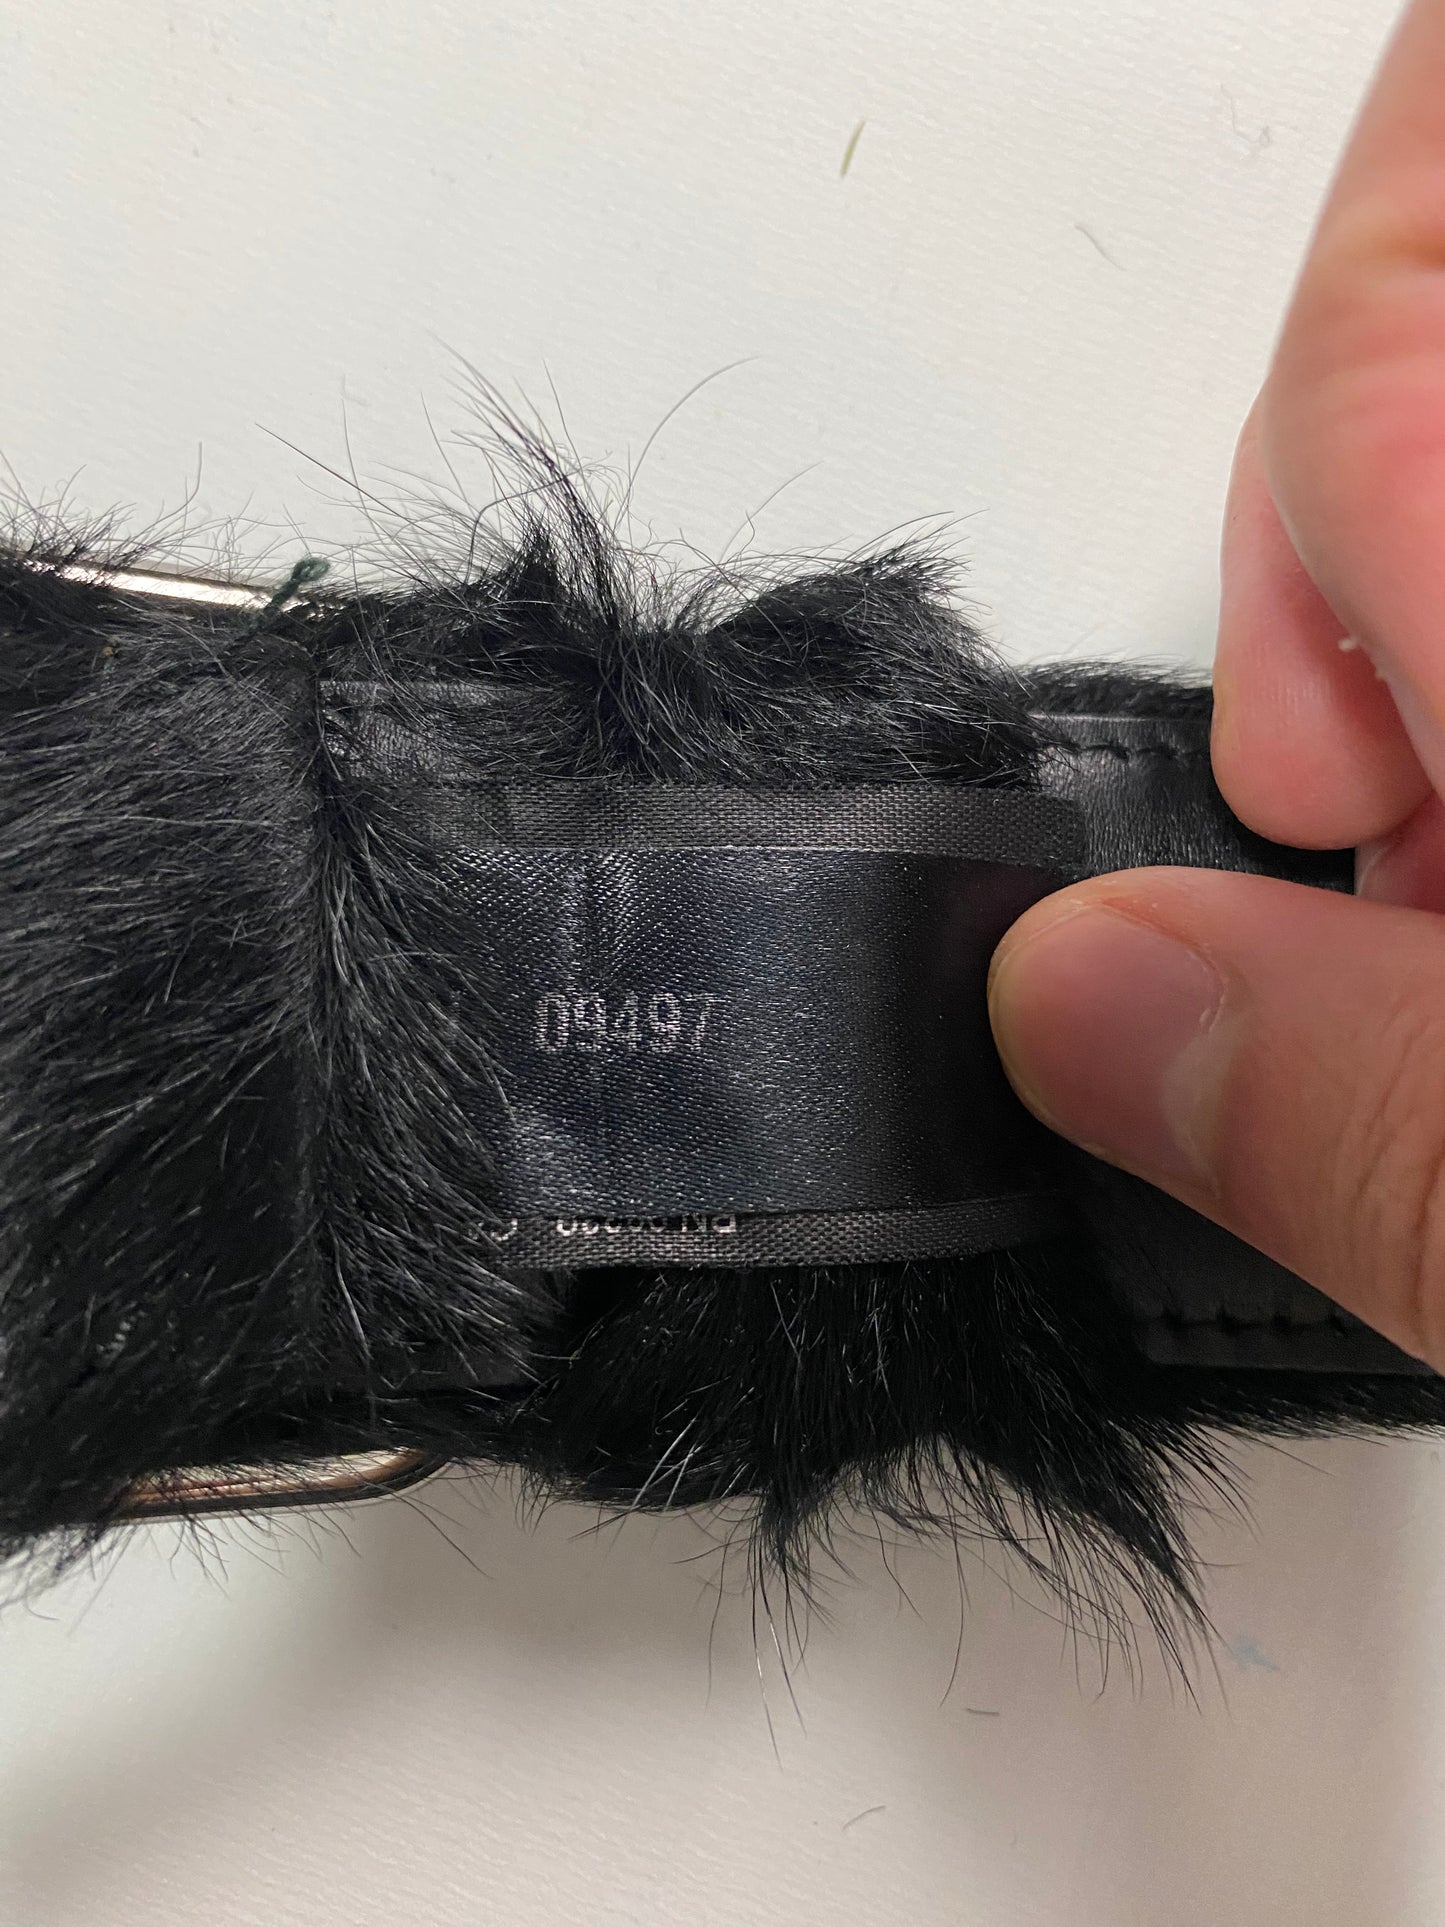 Prada AW17 pony hair fur belt in black with silver hardware SZ:95